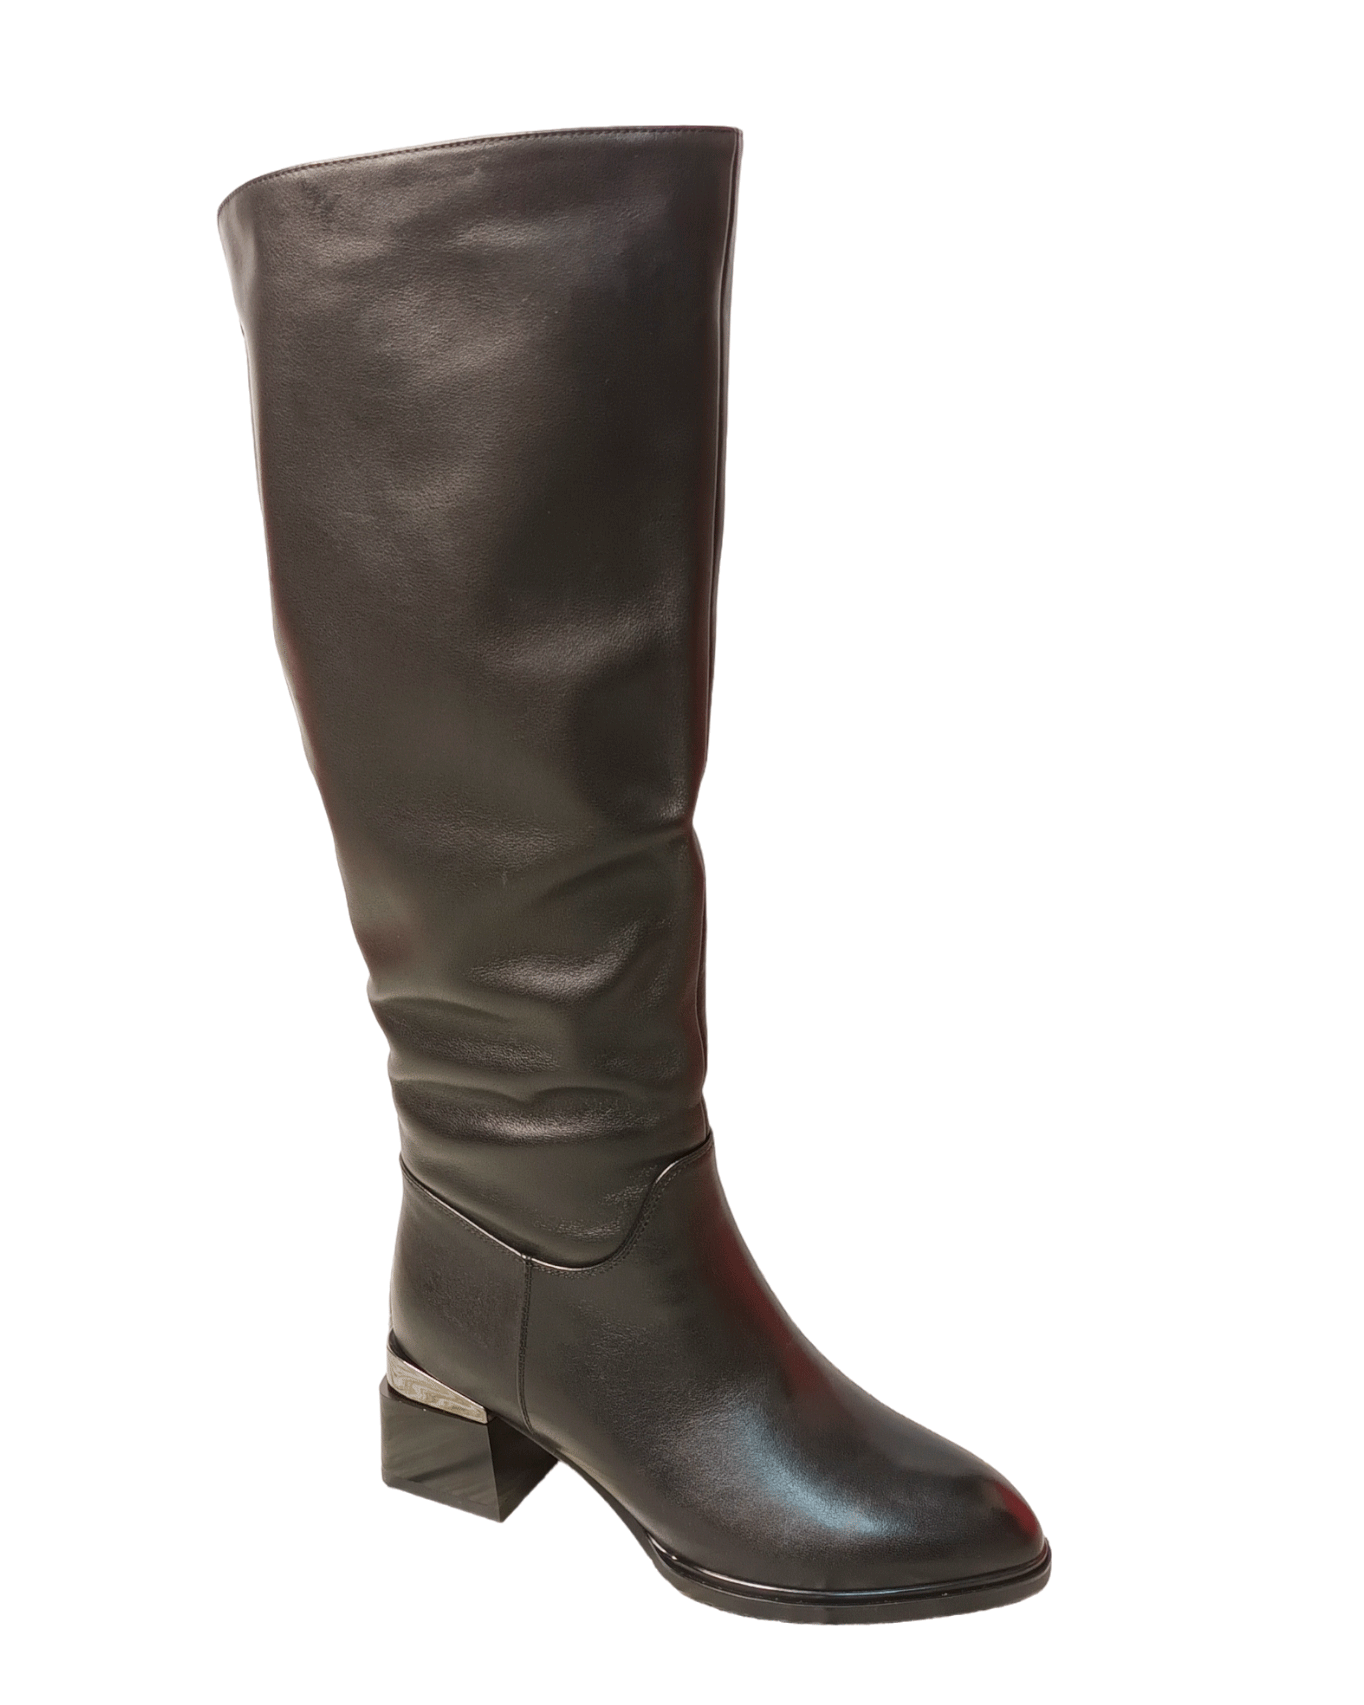 Сапоги женские зимние кожаные черные Z232-3